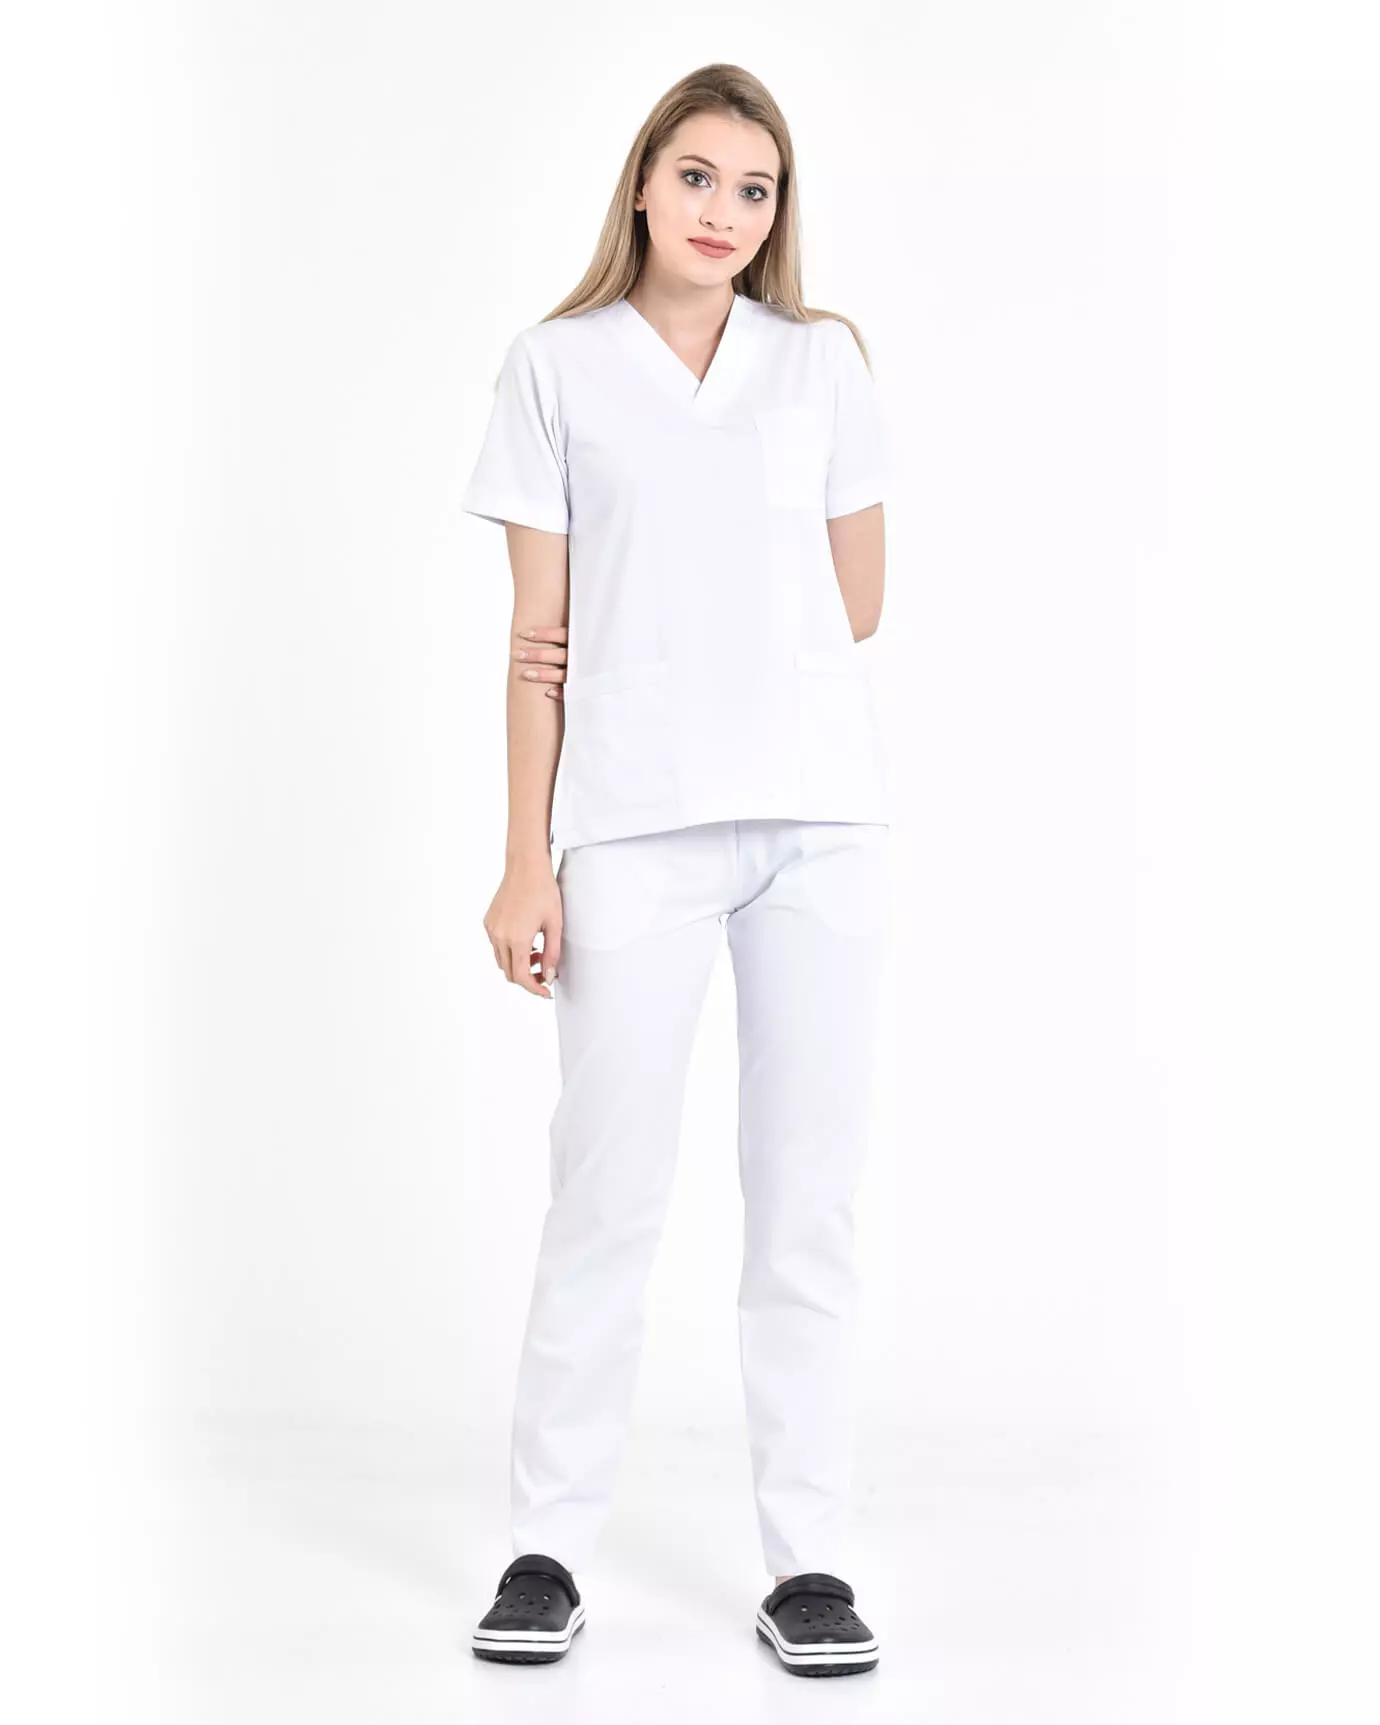 Kadın Hemşire Forması Premium Beyaz Takım Yarasa Kol